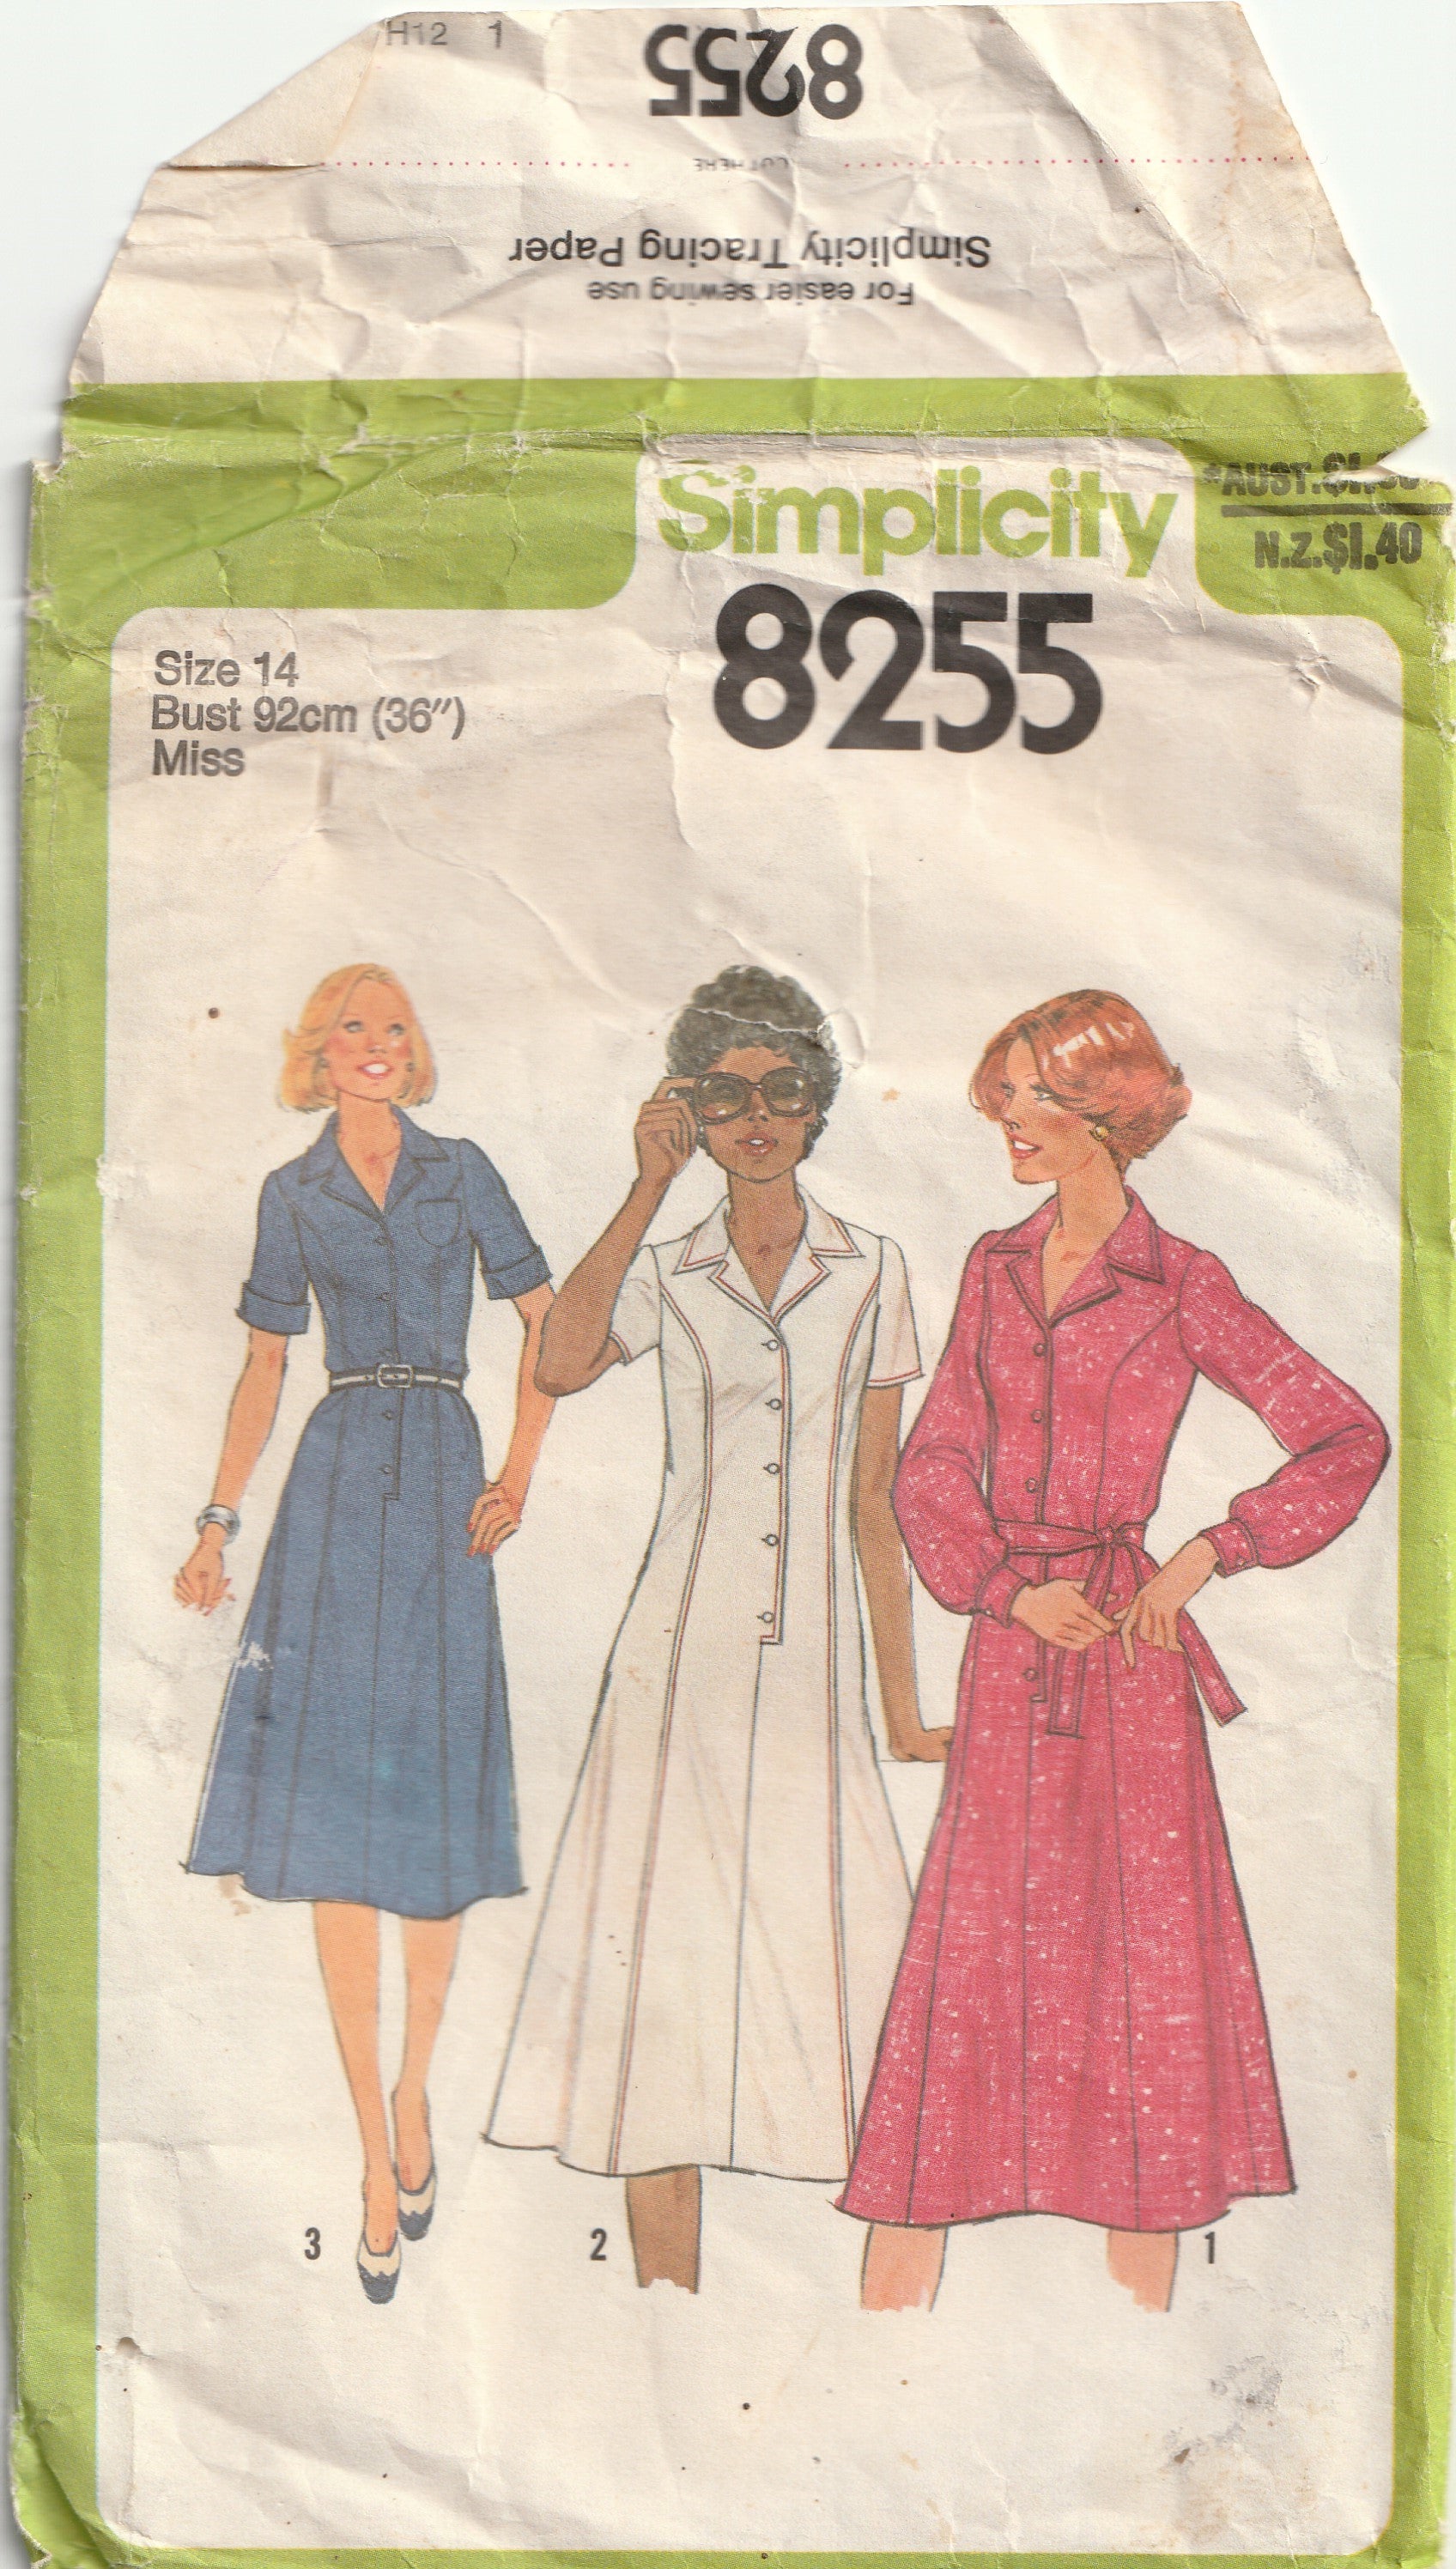 1970s vintage pattern shirtwaist dress simplicity 8255 1978 bust 92 cm